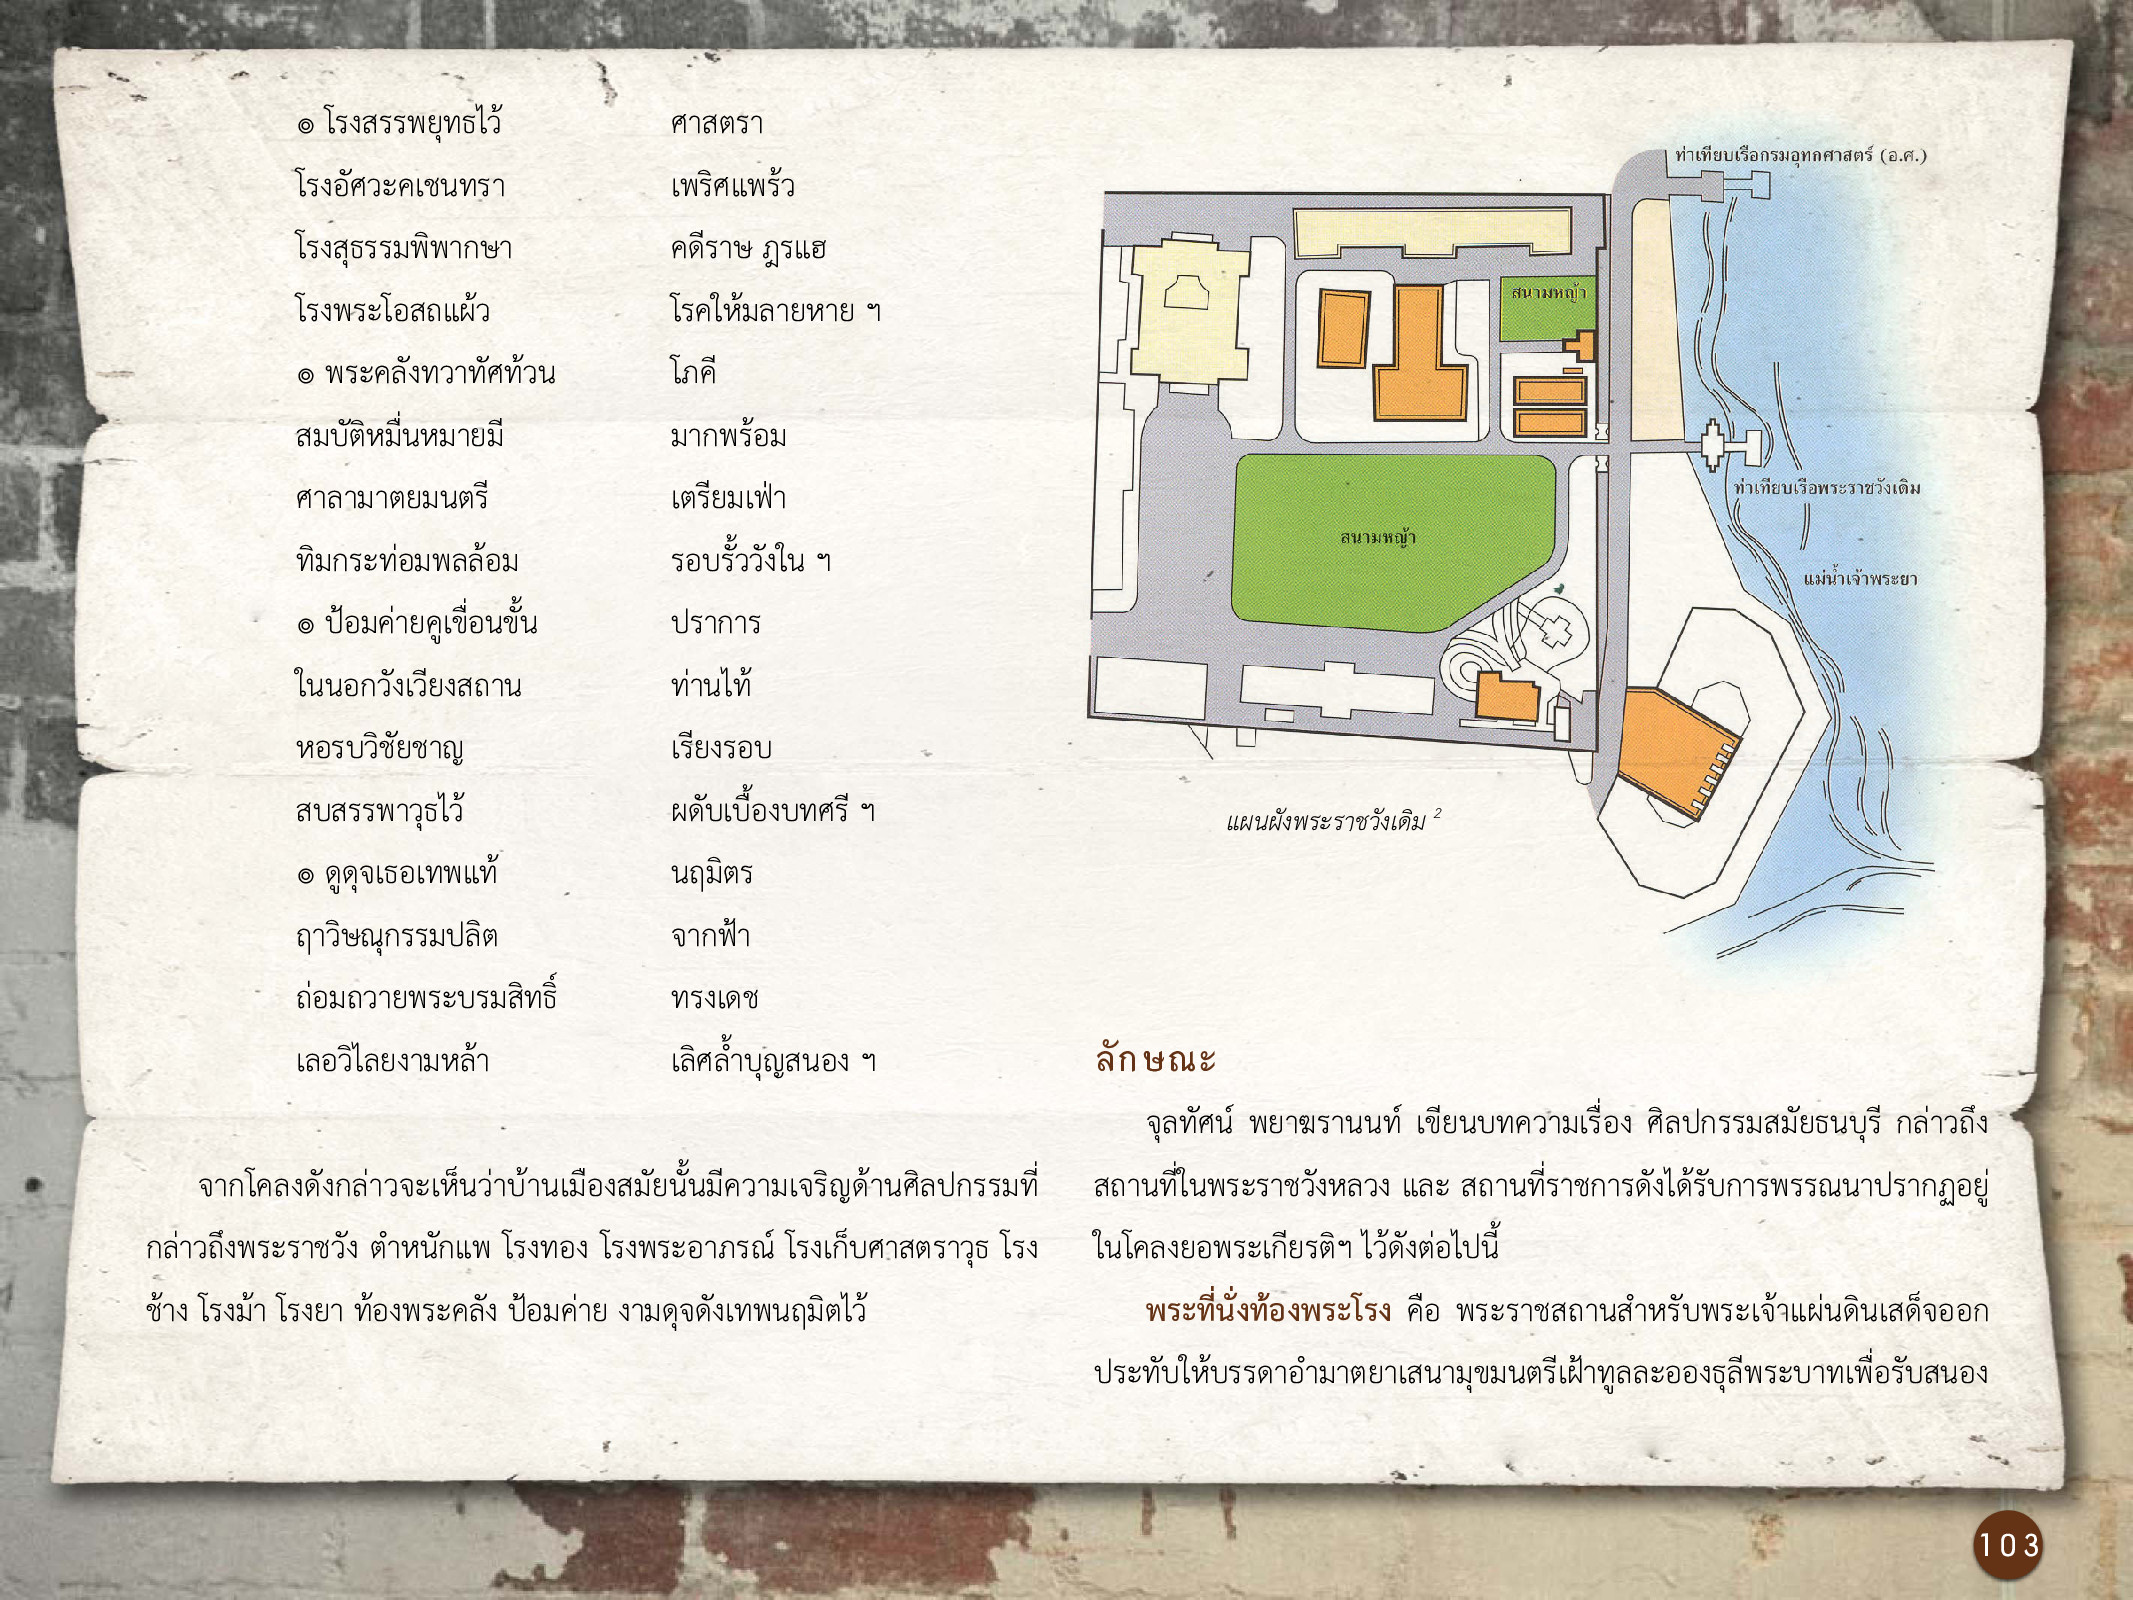 ศิลปกรรมกรุงธนบุรี ./images/encyclopedia/103.jpg